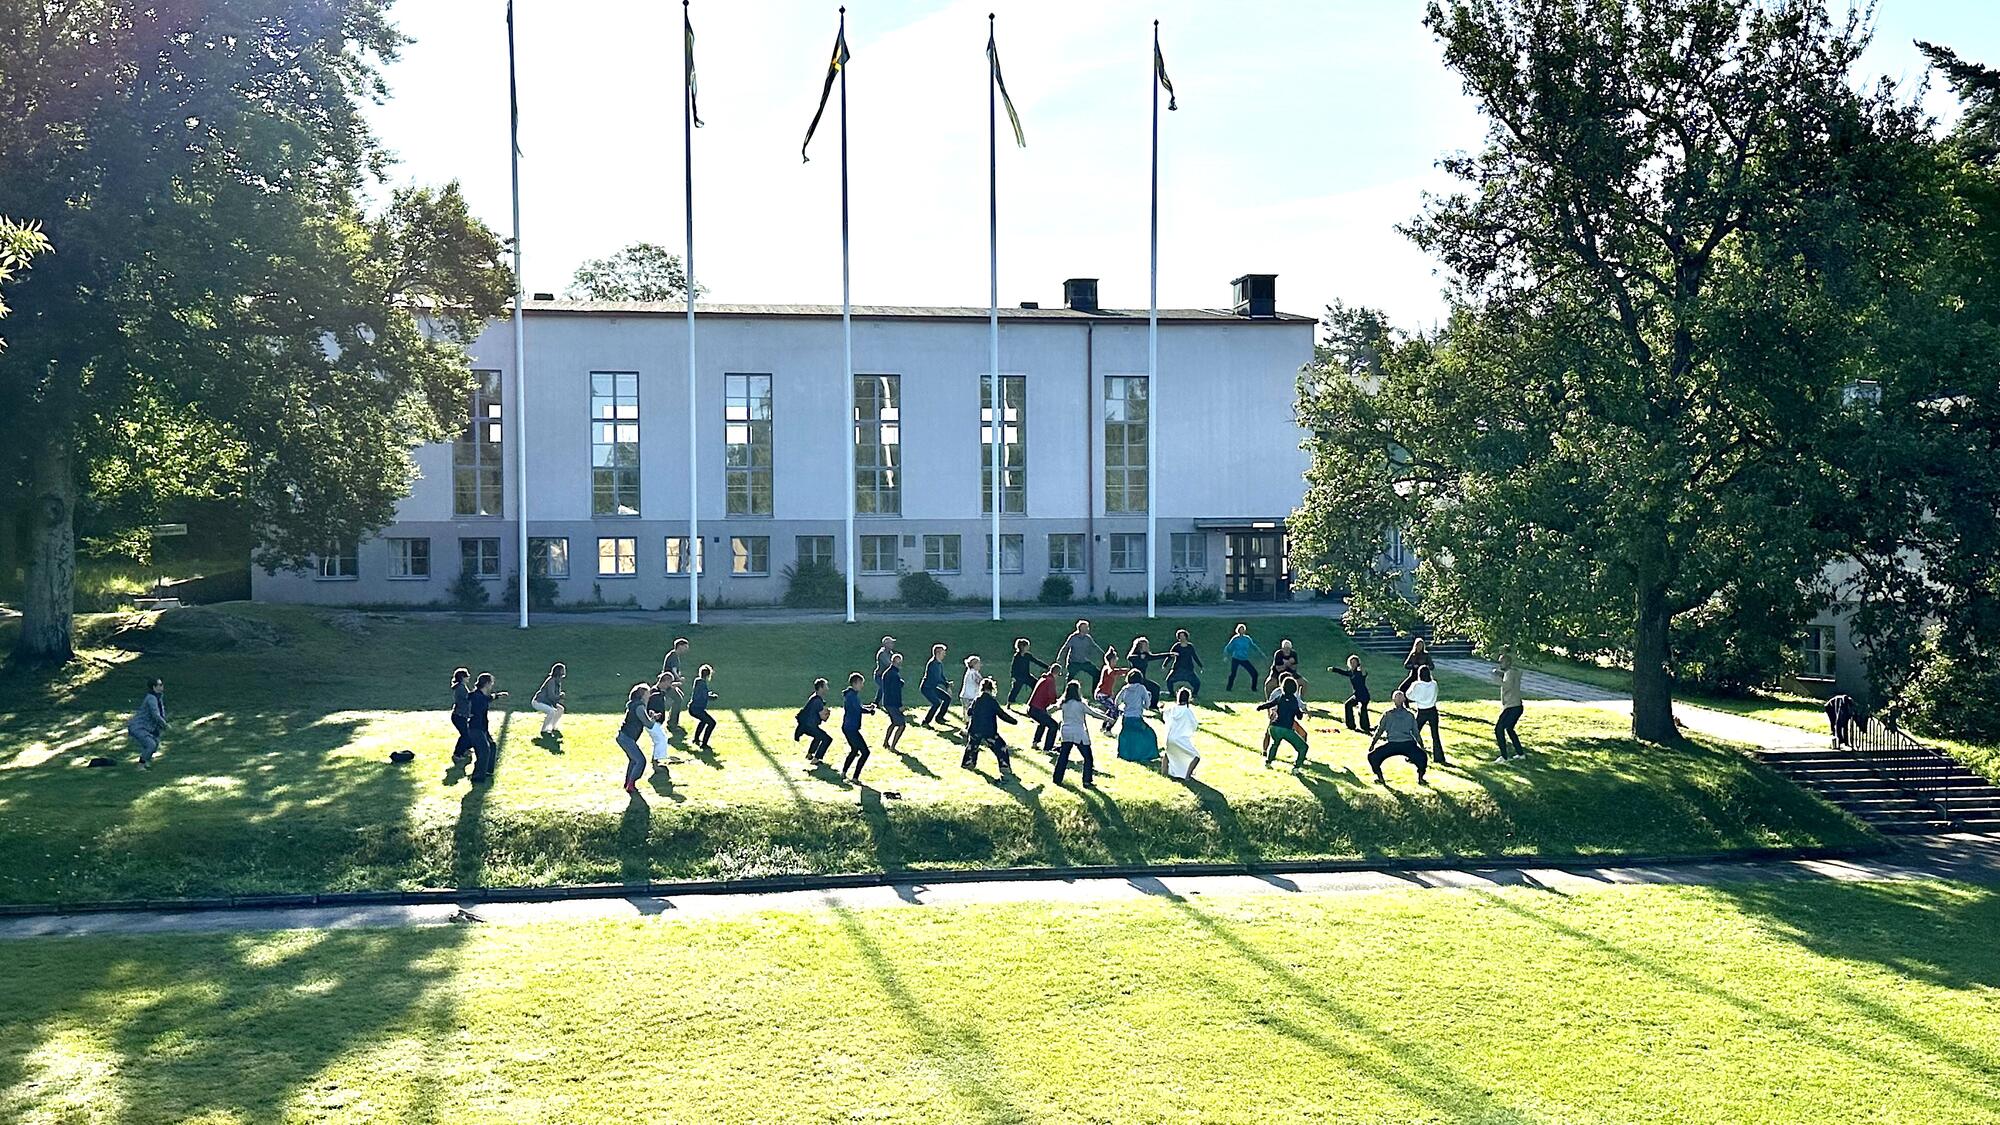 Hälsosamt och hållbart på Lillsved i Stockholms skärgård